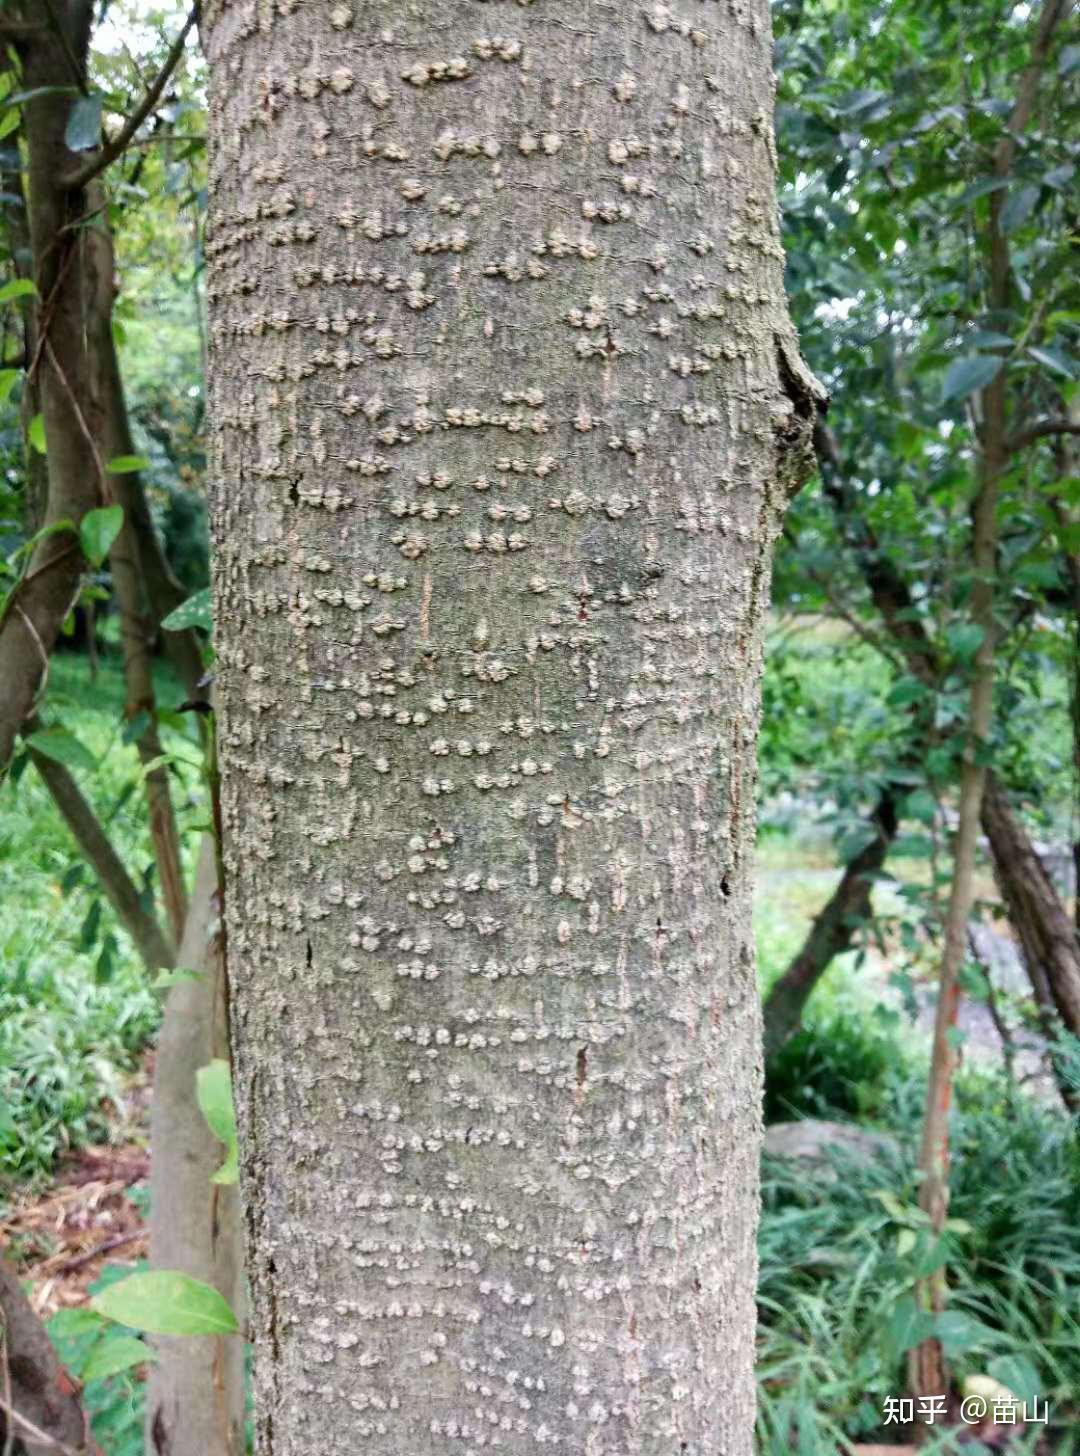 小小树皮能做甚,用它认木靠谱吗?